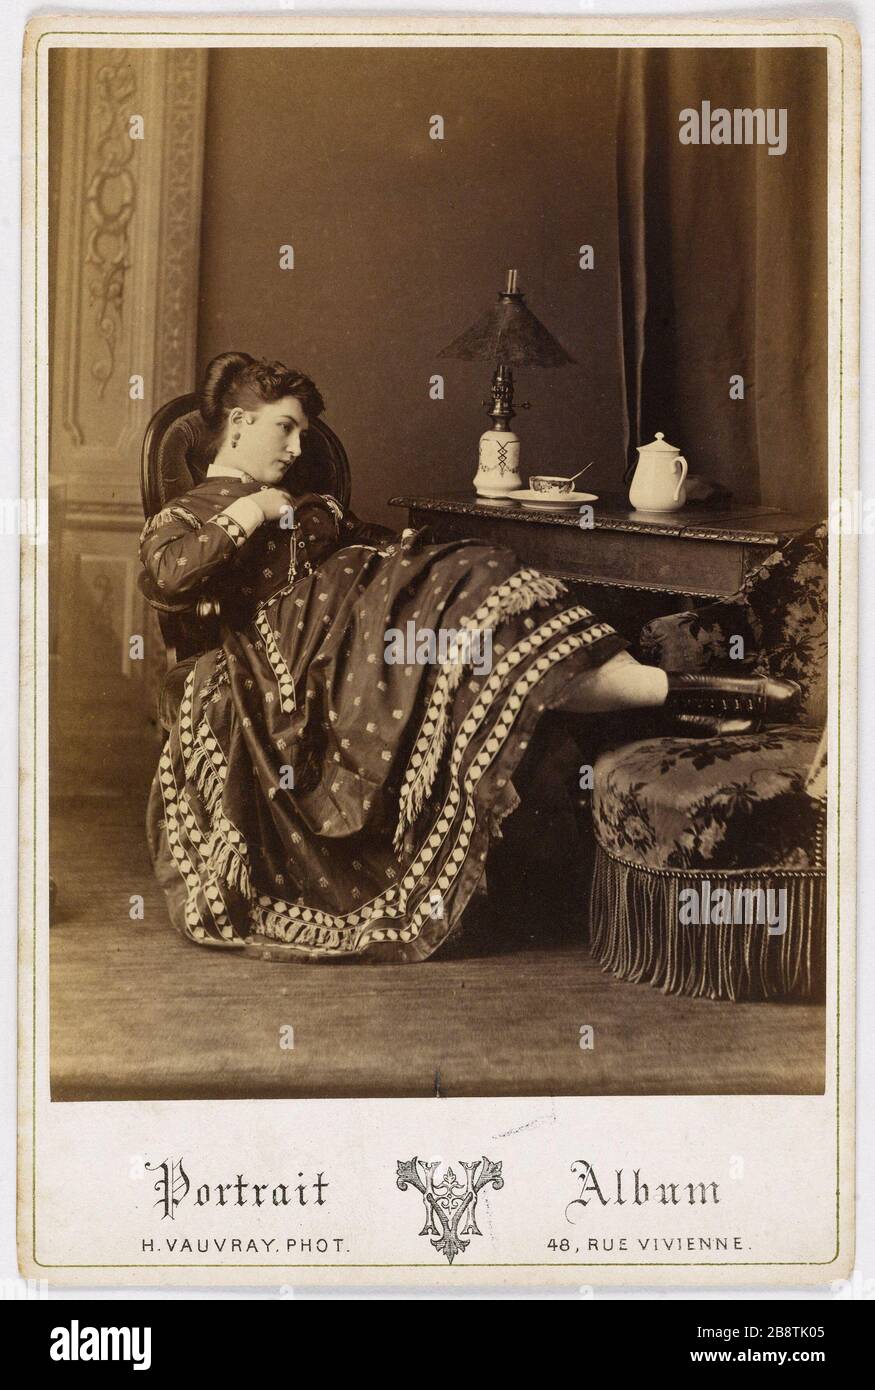 Portrait of Morliani, actress 'Morliani, actrice'. Photographie d'Hippolyte Vauvray (actid de 1853 à 1887). Tirage sur papier albuminé. Paris, musée Carnavalet. Stock Photo